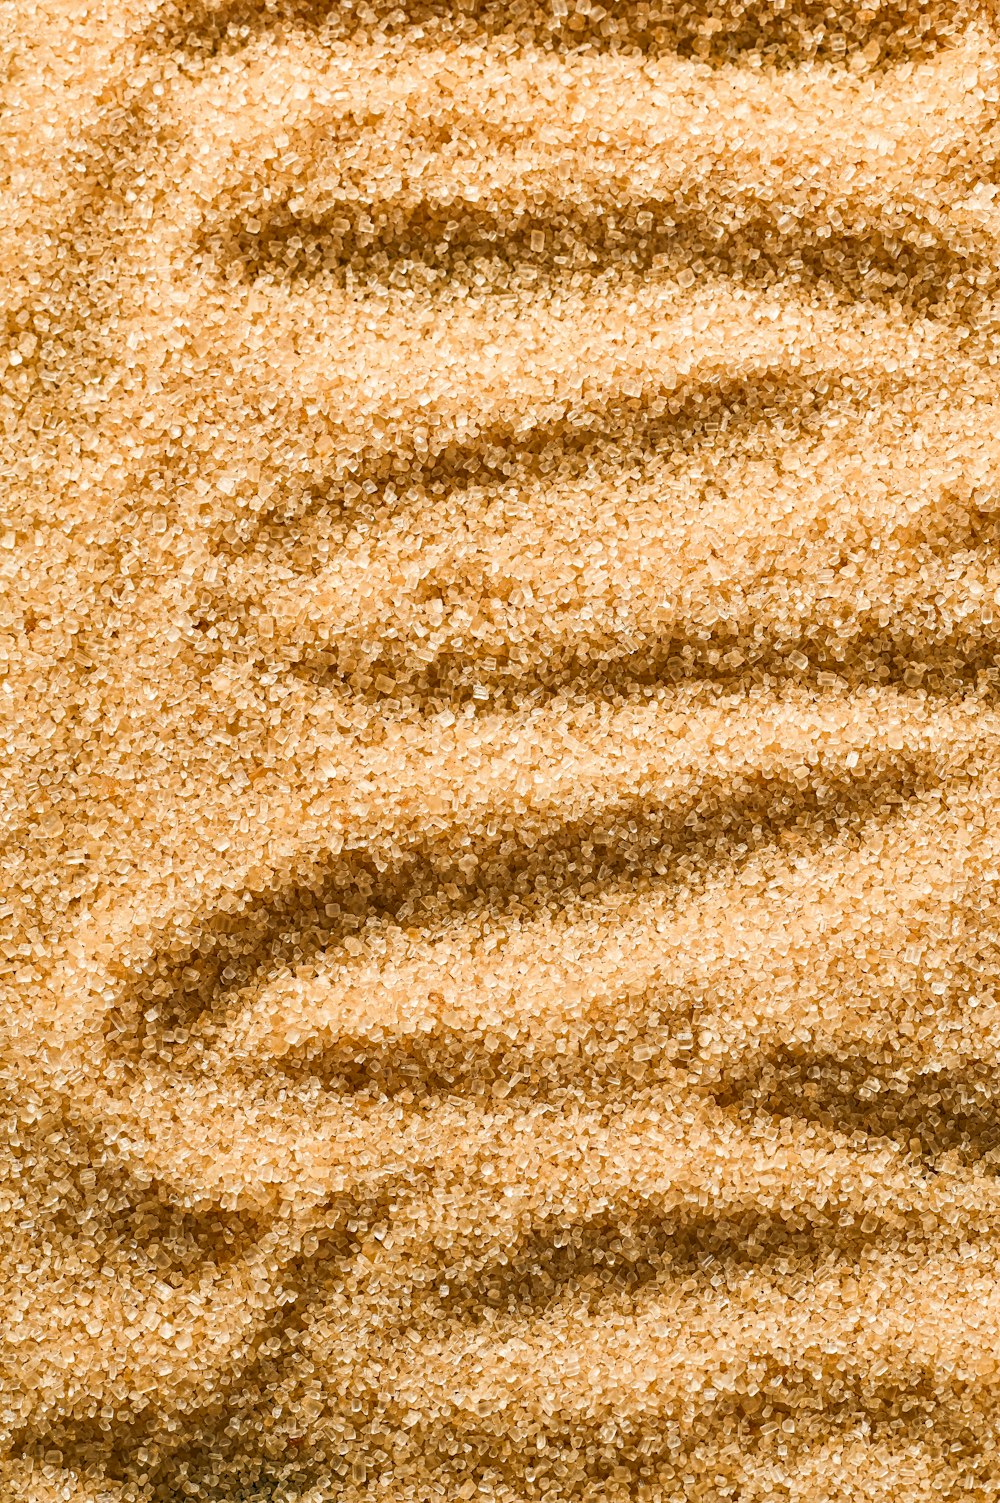 une zone sablonneuse avec une petite quantité de sable